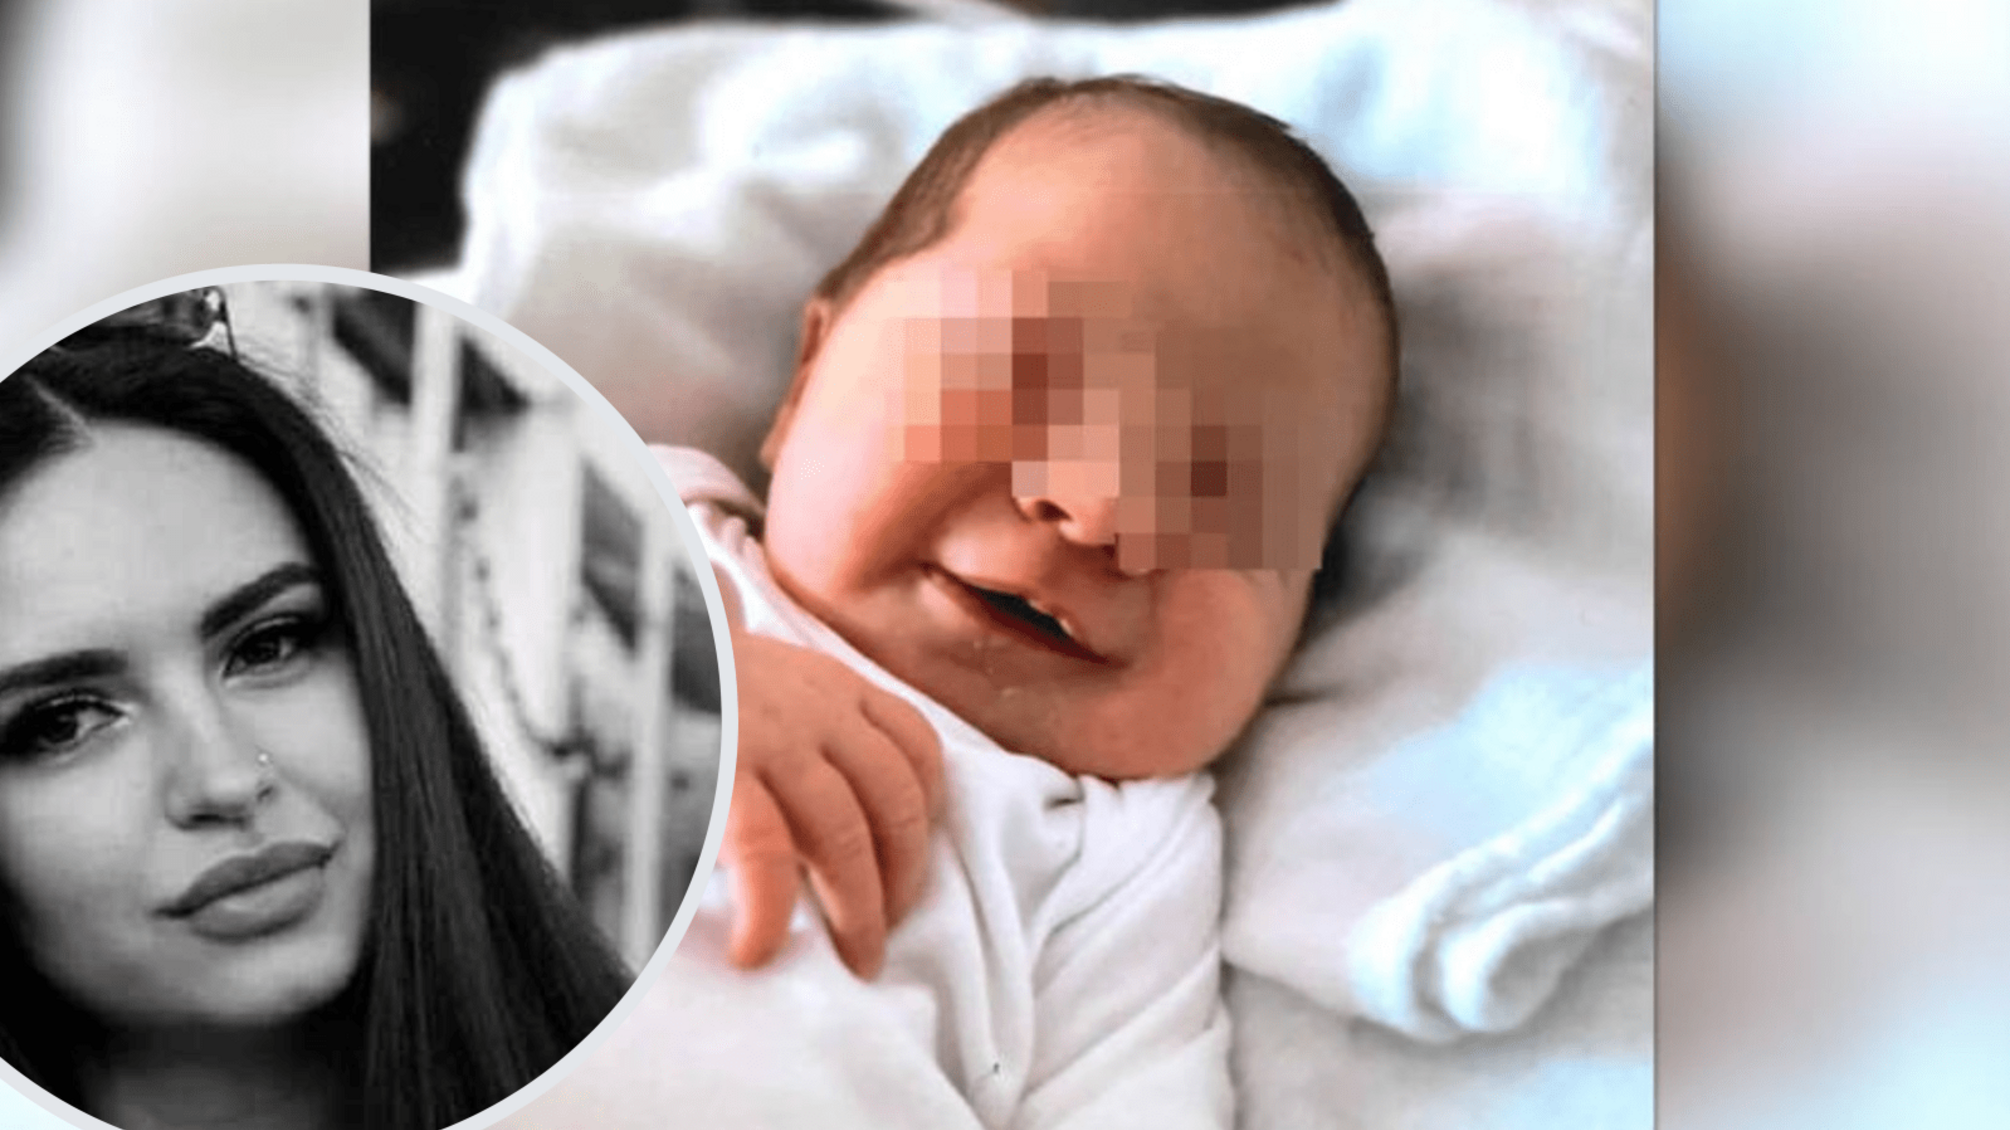 Двоє росіян вбили українку та її матір в Німеччині, щоб викрасти немовля